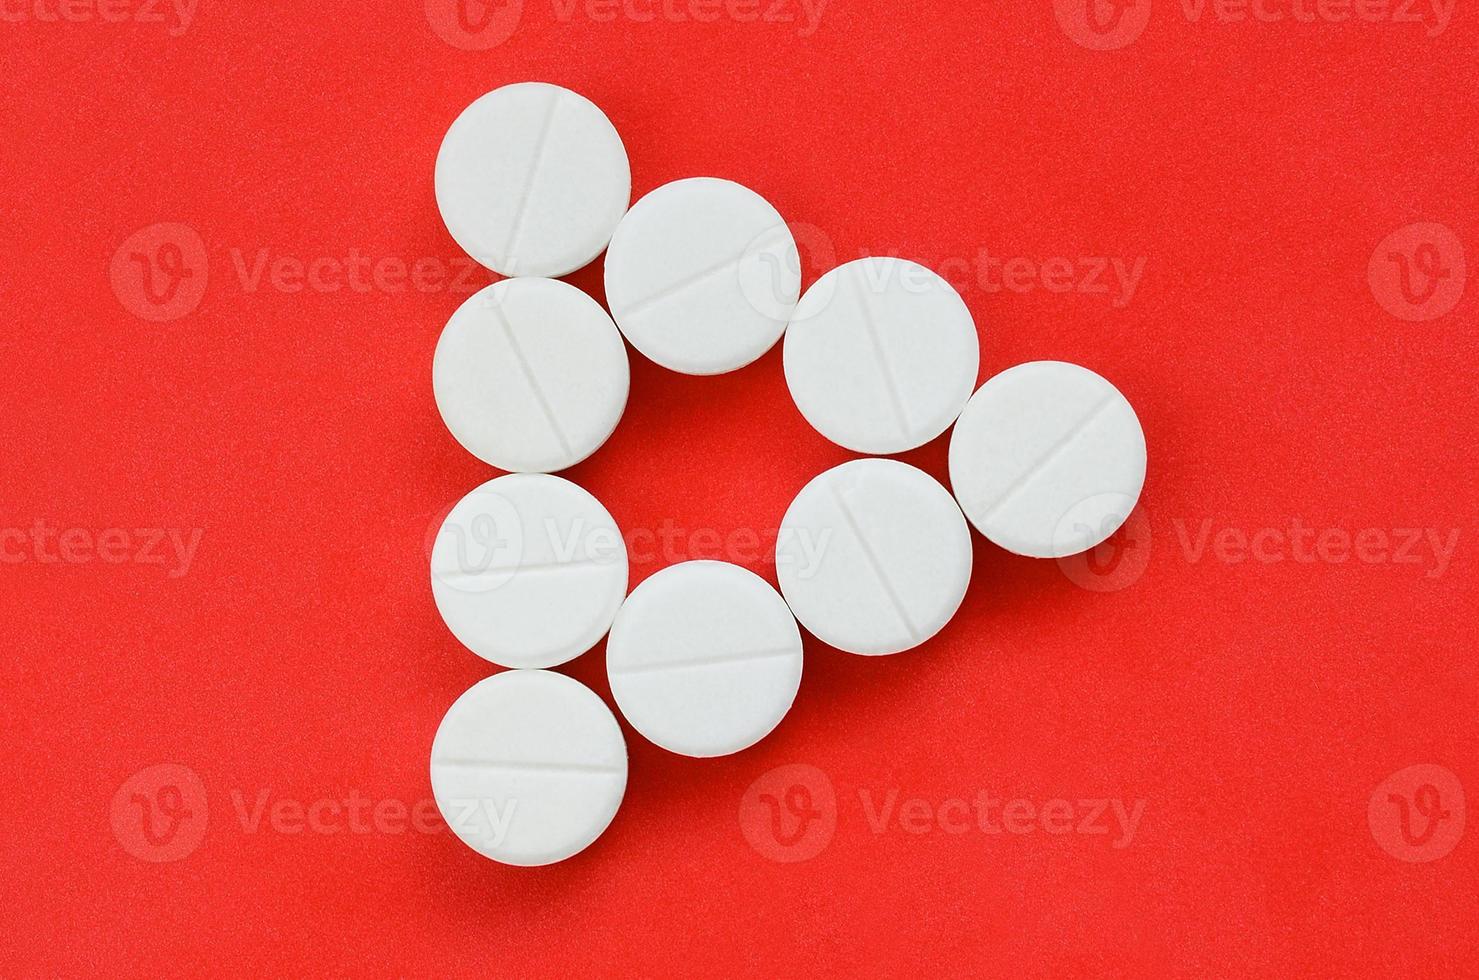 vários comprimidos brancos estão sobre um fundo vermelho brilhante na forma de um triângulo uniforme. imagem de fundo sobre medicina e tópicos farmacêuticos foto